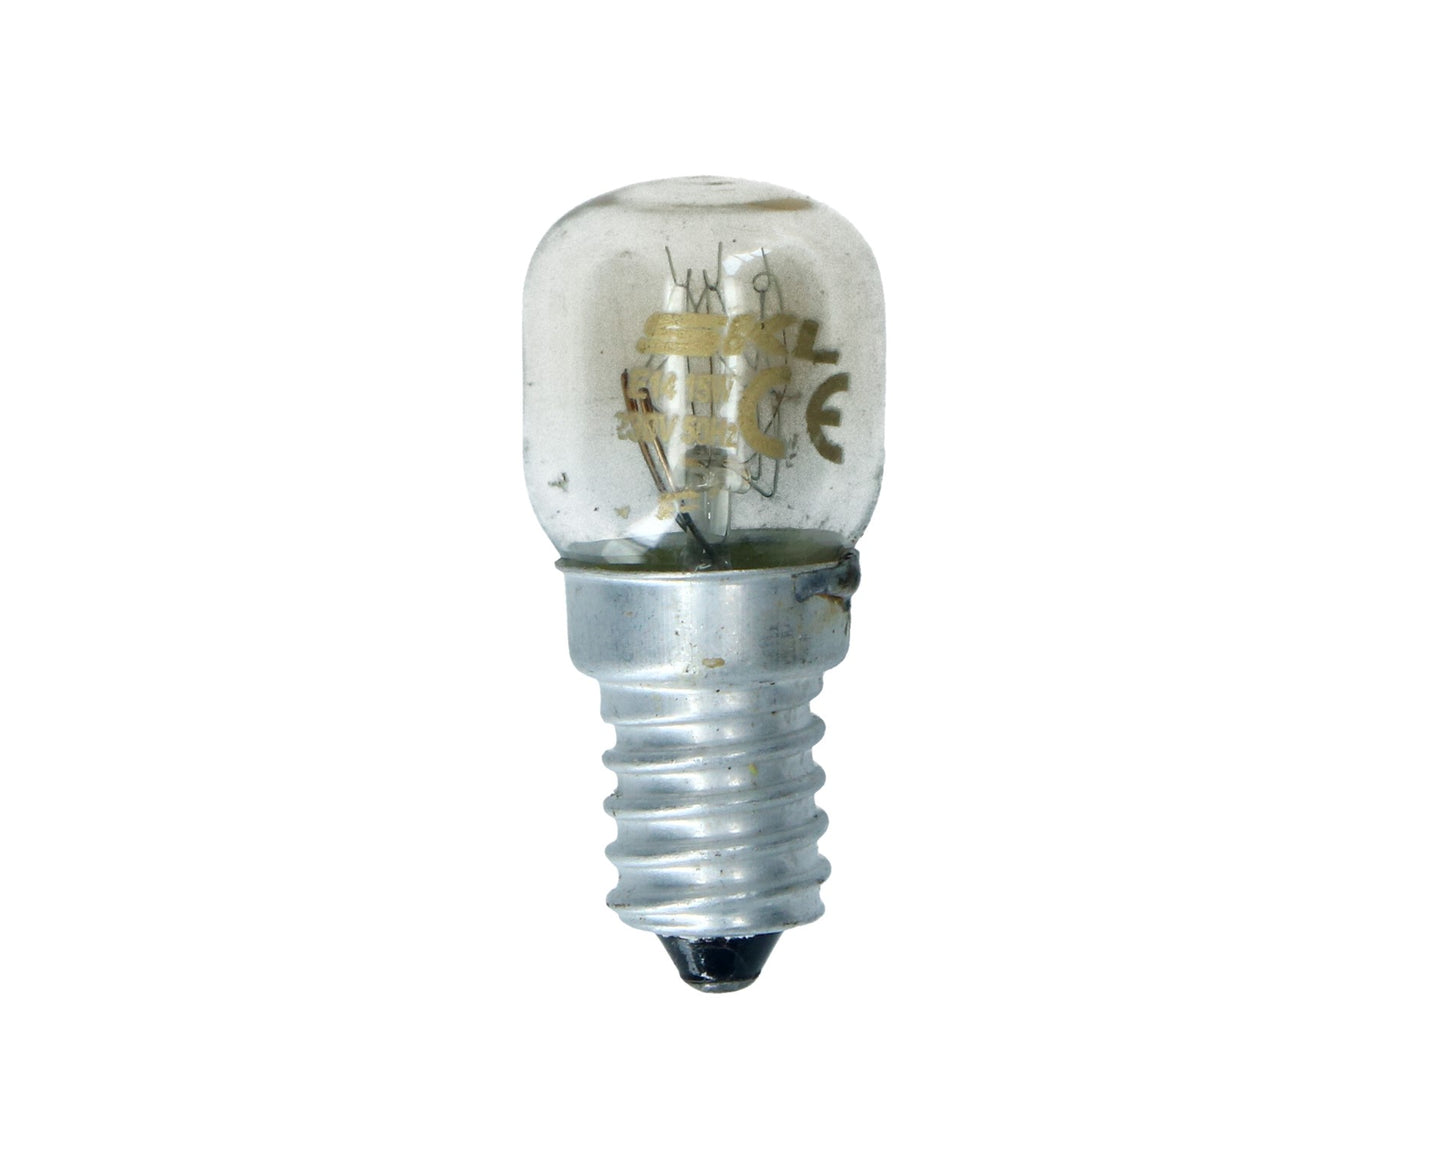 Oven Lamp Light Bulb E14 SES Pygmy for for Bosch, Neff, Siemens cooker 15W 300° Degrees